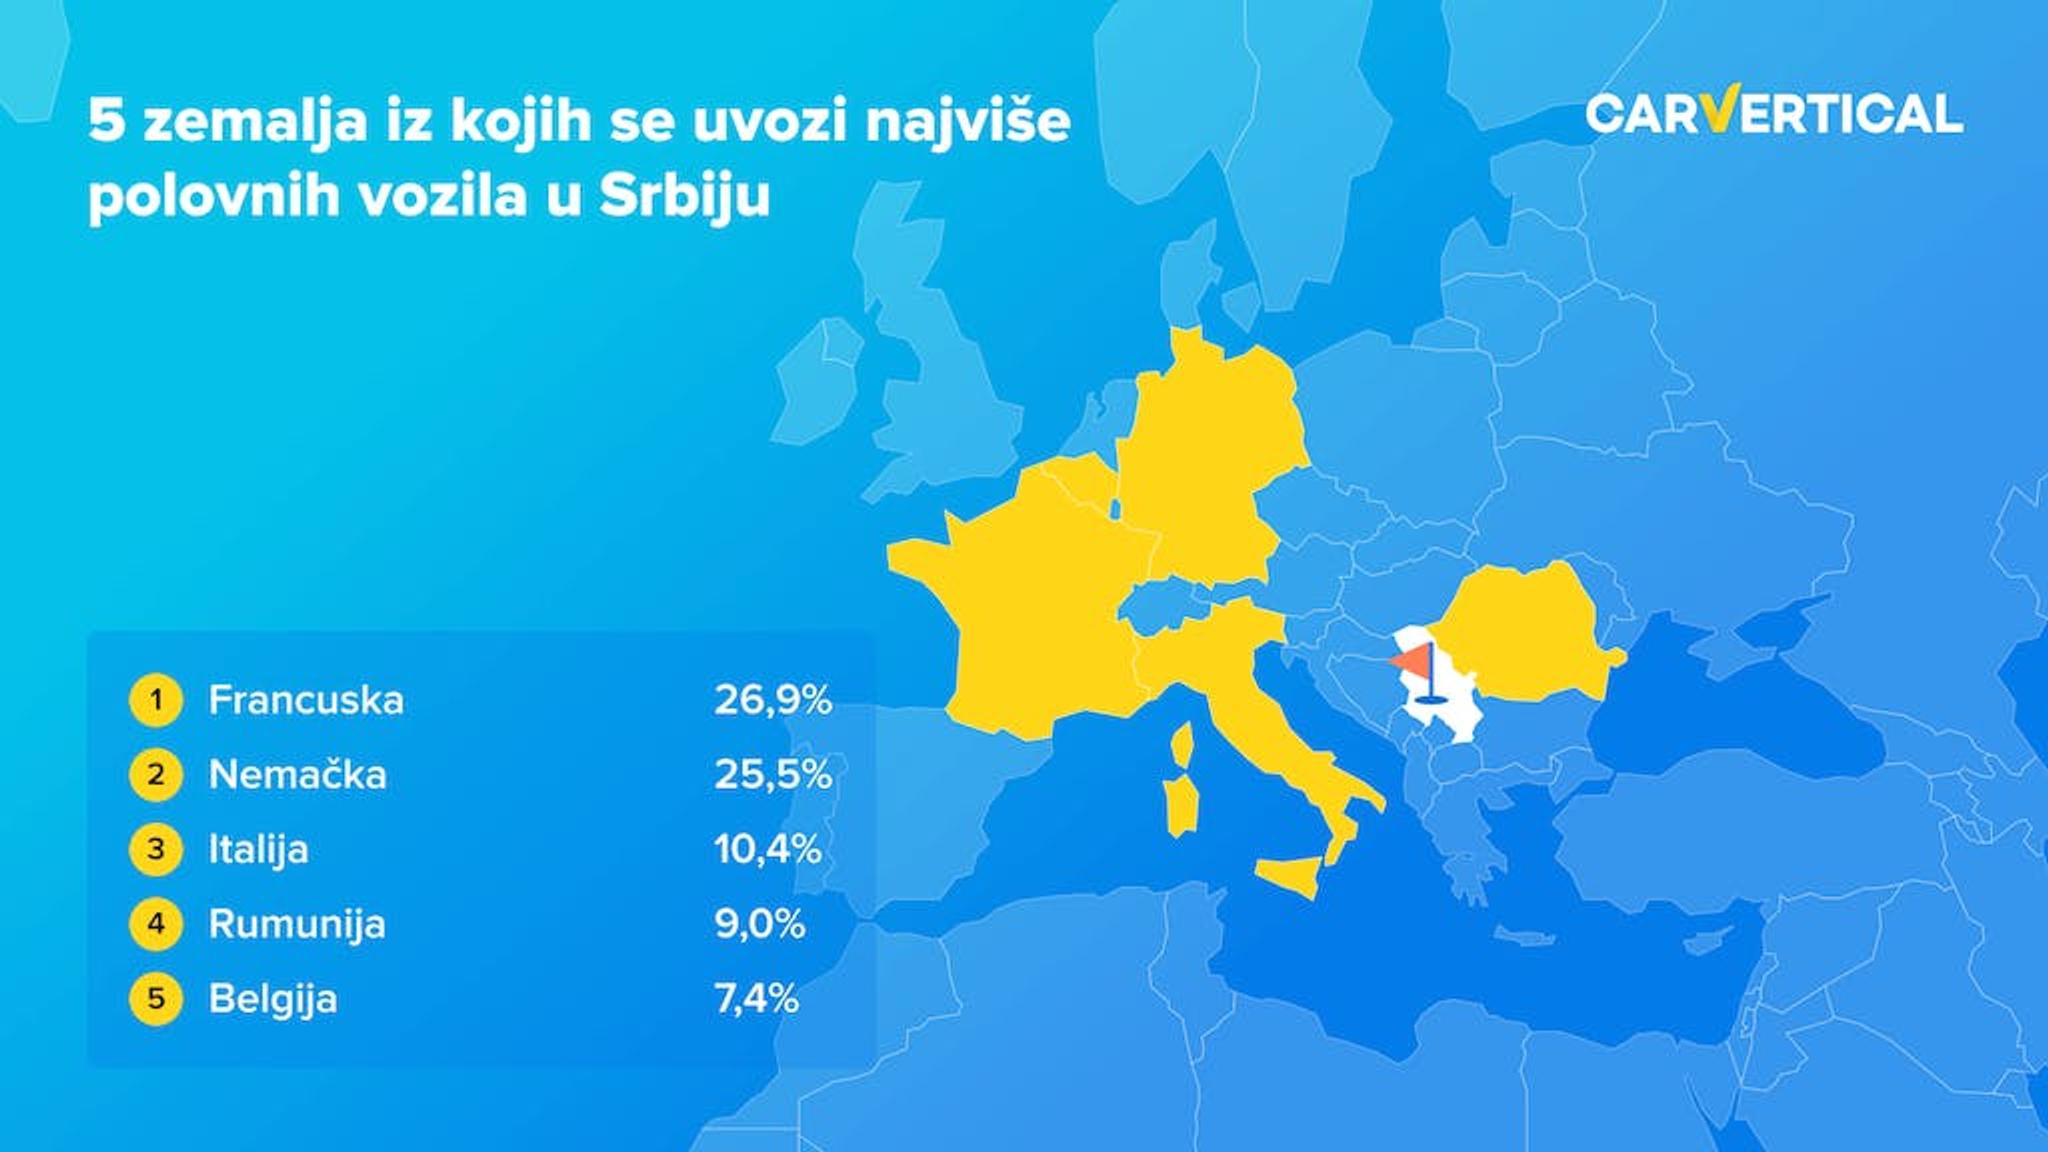 Pet zemalja iz kojih se uvozi najveci broj polovnih vozila u Srbiju